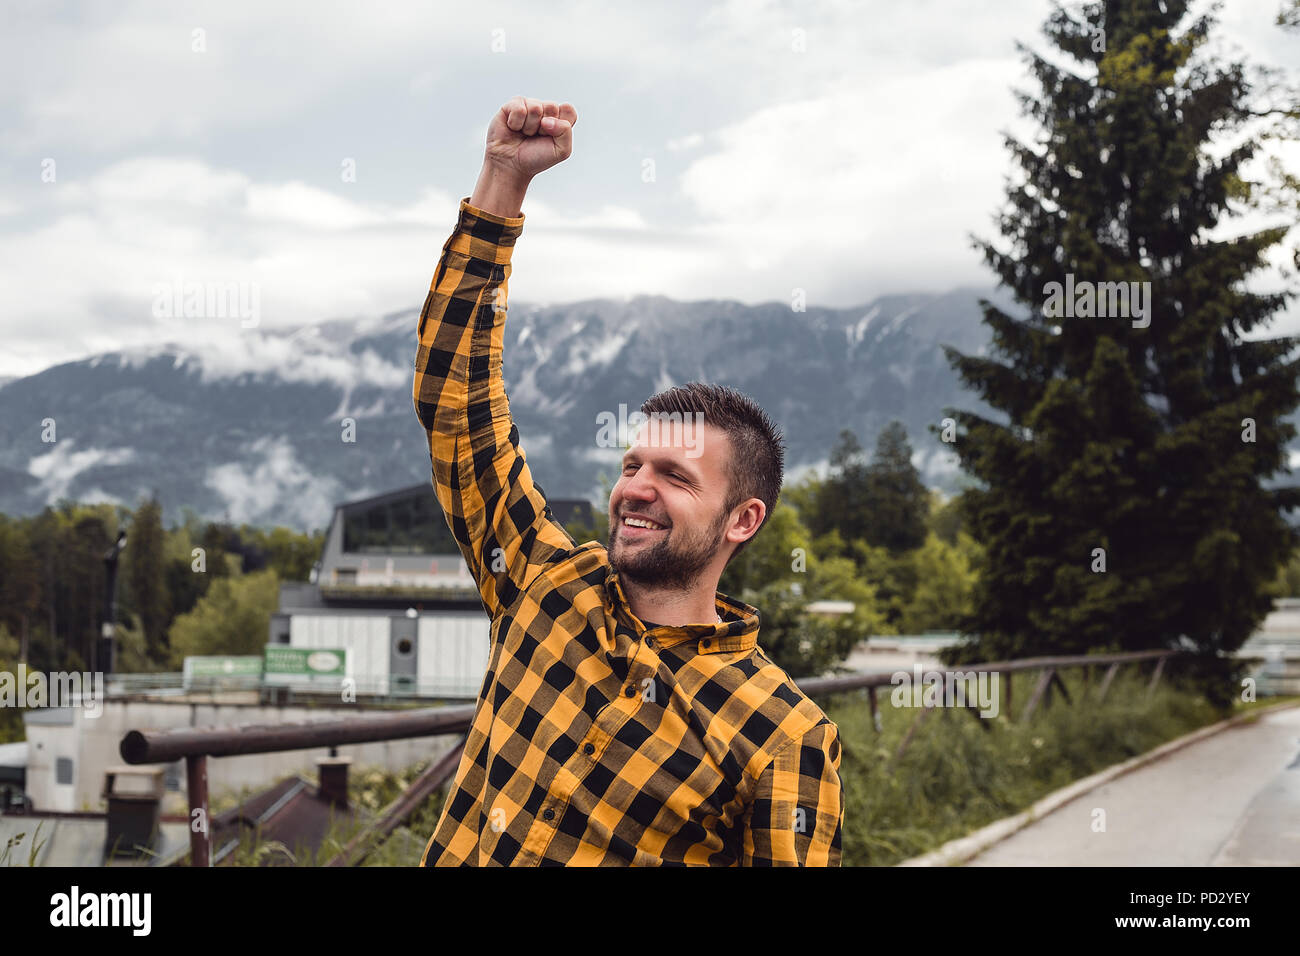 Felice l'uomo facendo un pugno nel villaggio di montagna, Dolenci, Slovenia Foto Stock